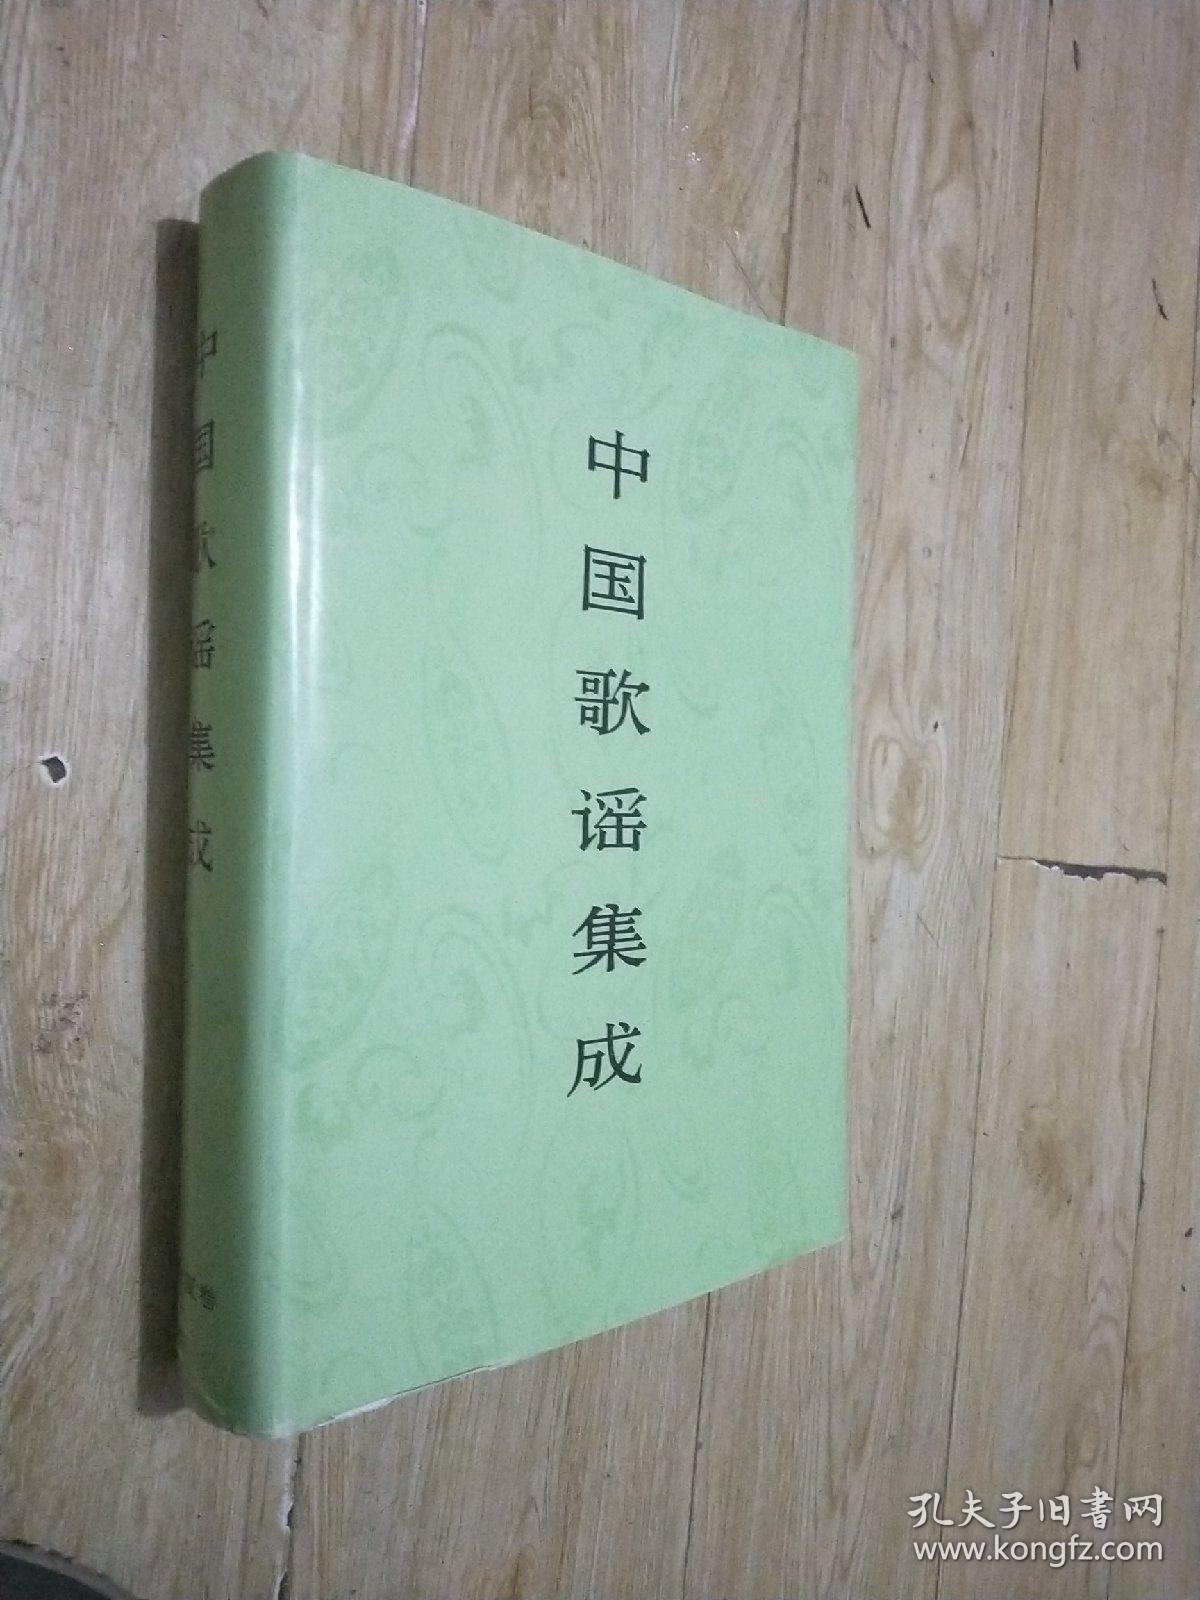 中国歌谣集成—宁夏卷，有函套